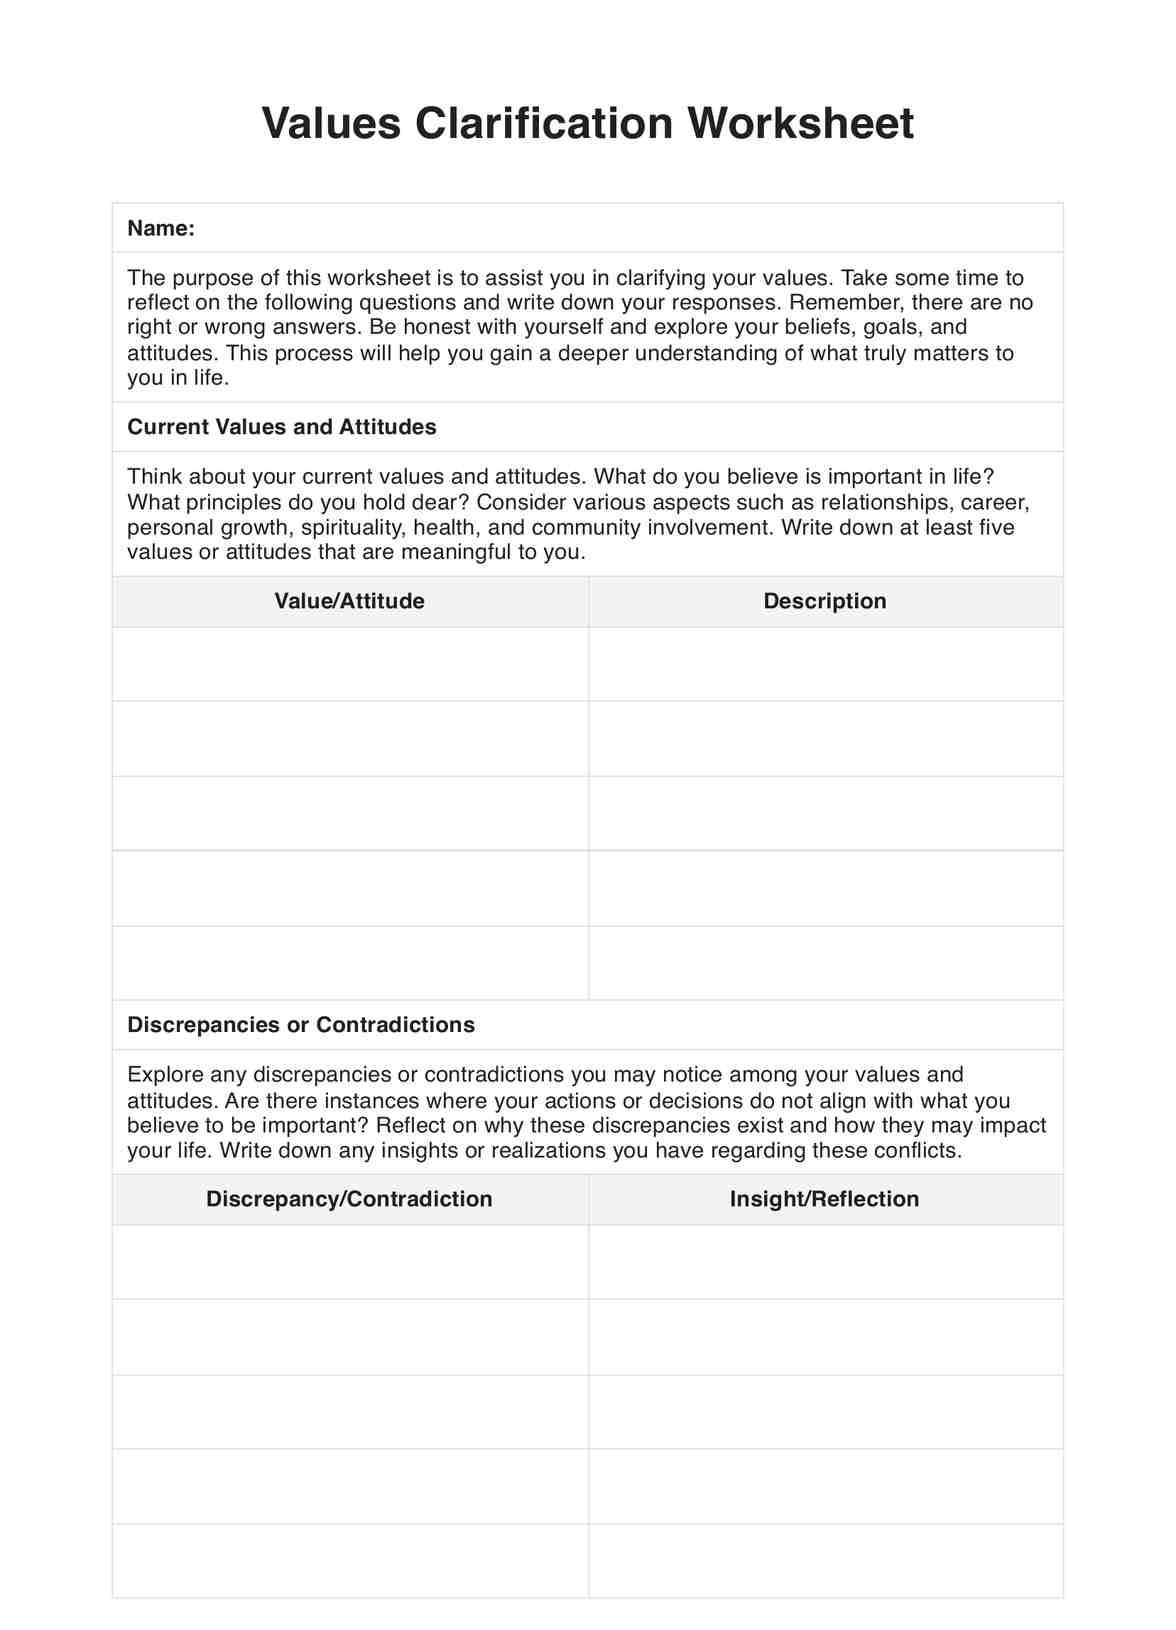 Values Clarification Worksheet PDF Example